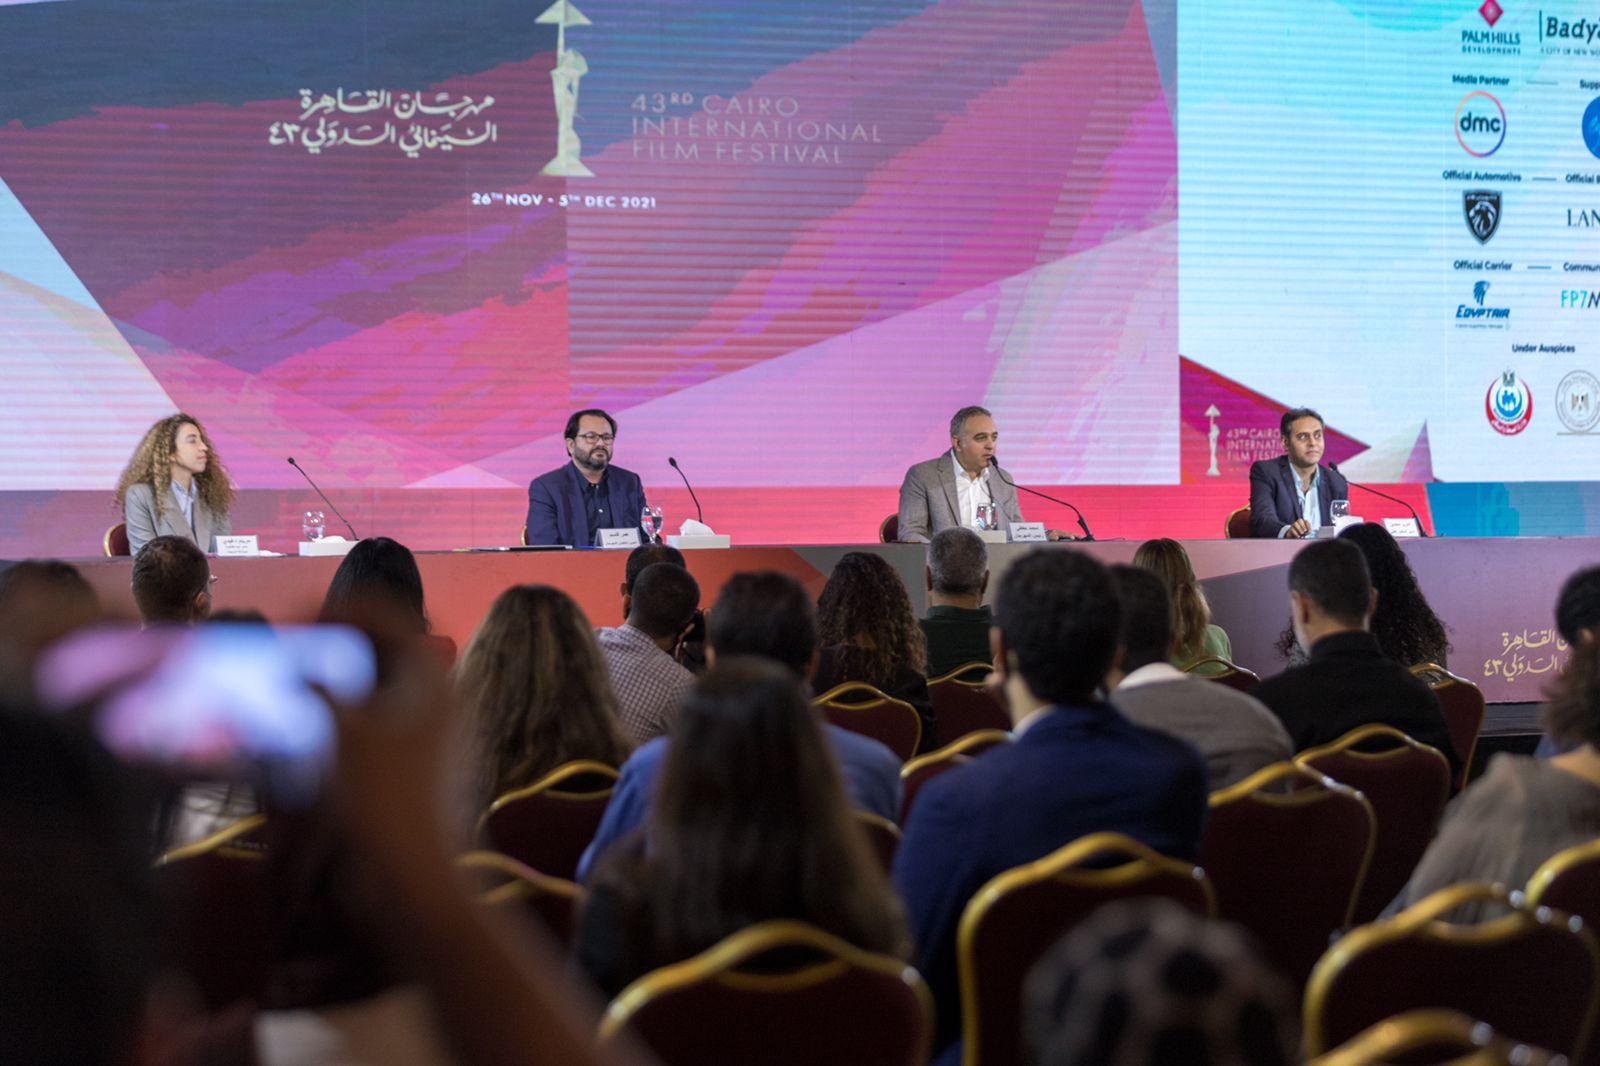 المؤتمر الصحفي لمهرجان القاهرة السينمائي الدولي 43